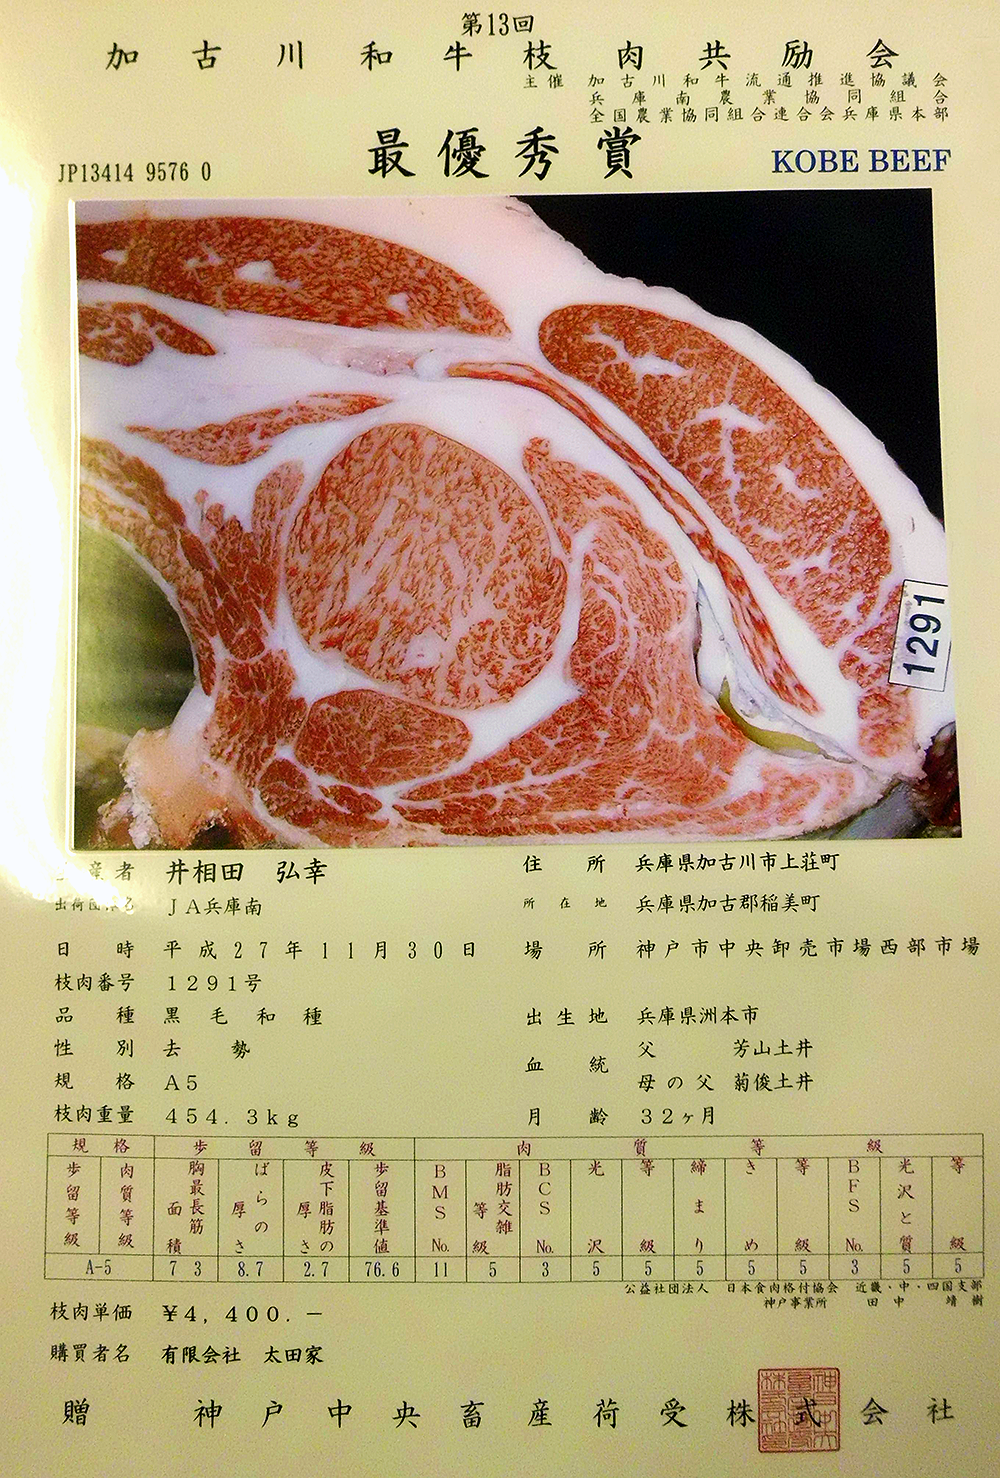 Best Award Winning Kobe Beef - Kobe Isoda Farm